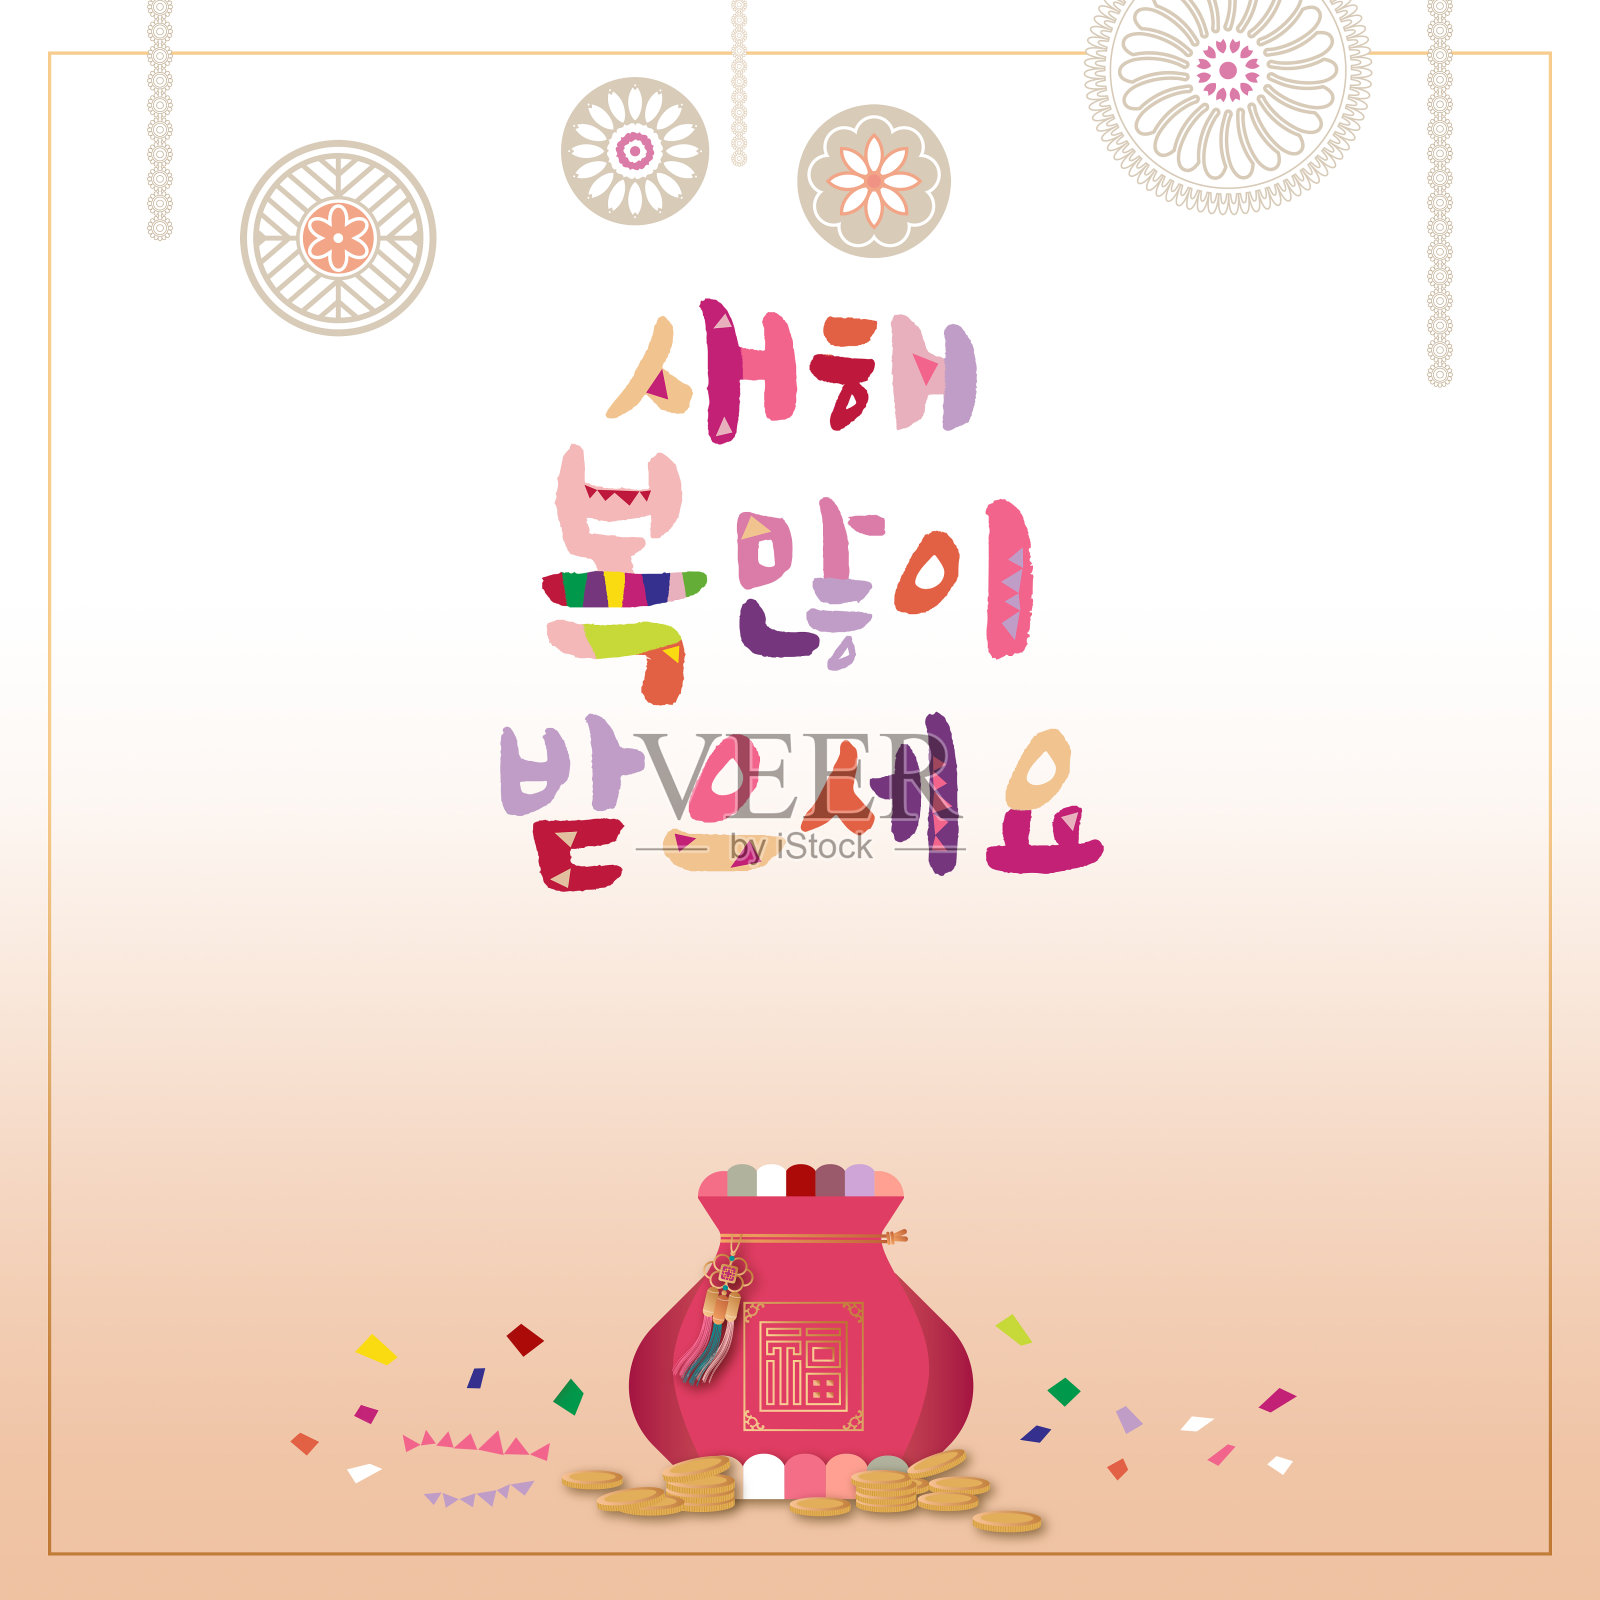 韩国传统节日背景的韩语和幸运包。韩文翻译:“新年快乐”与复制空间。节日卡的概念。设计模板素材